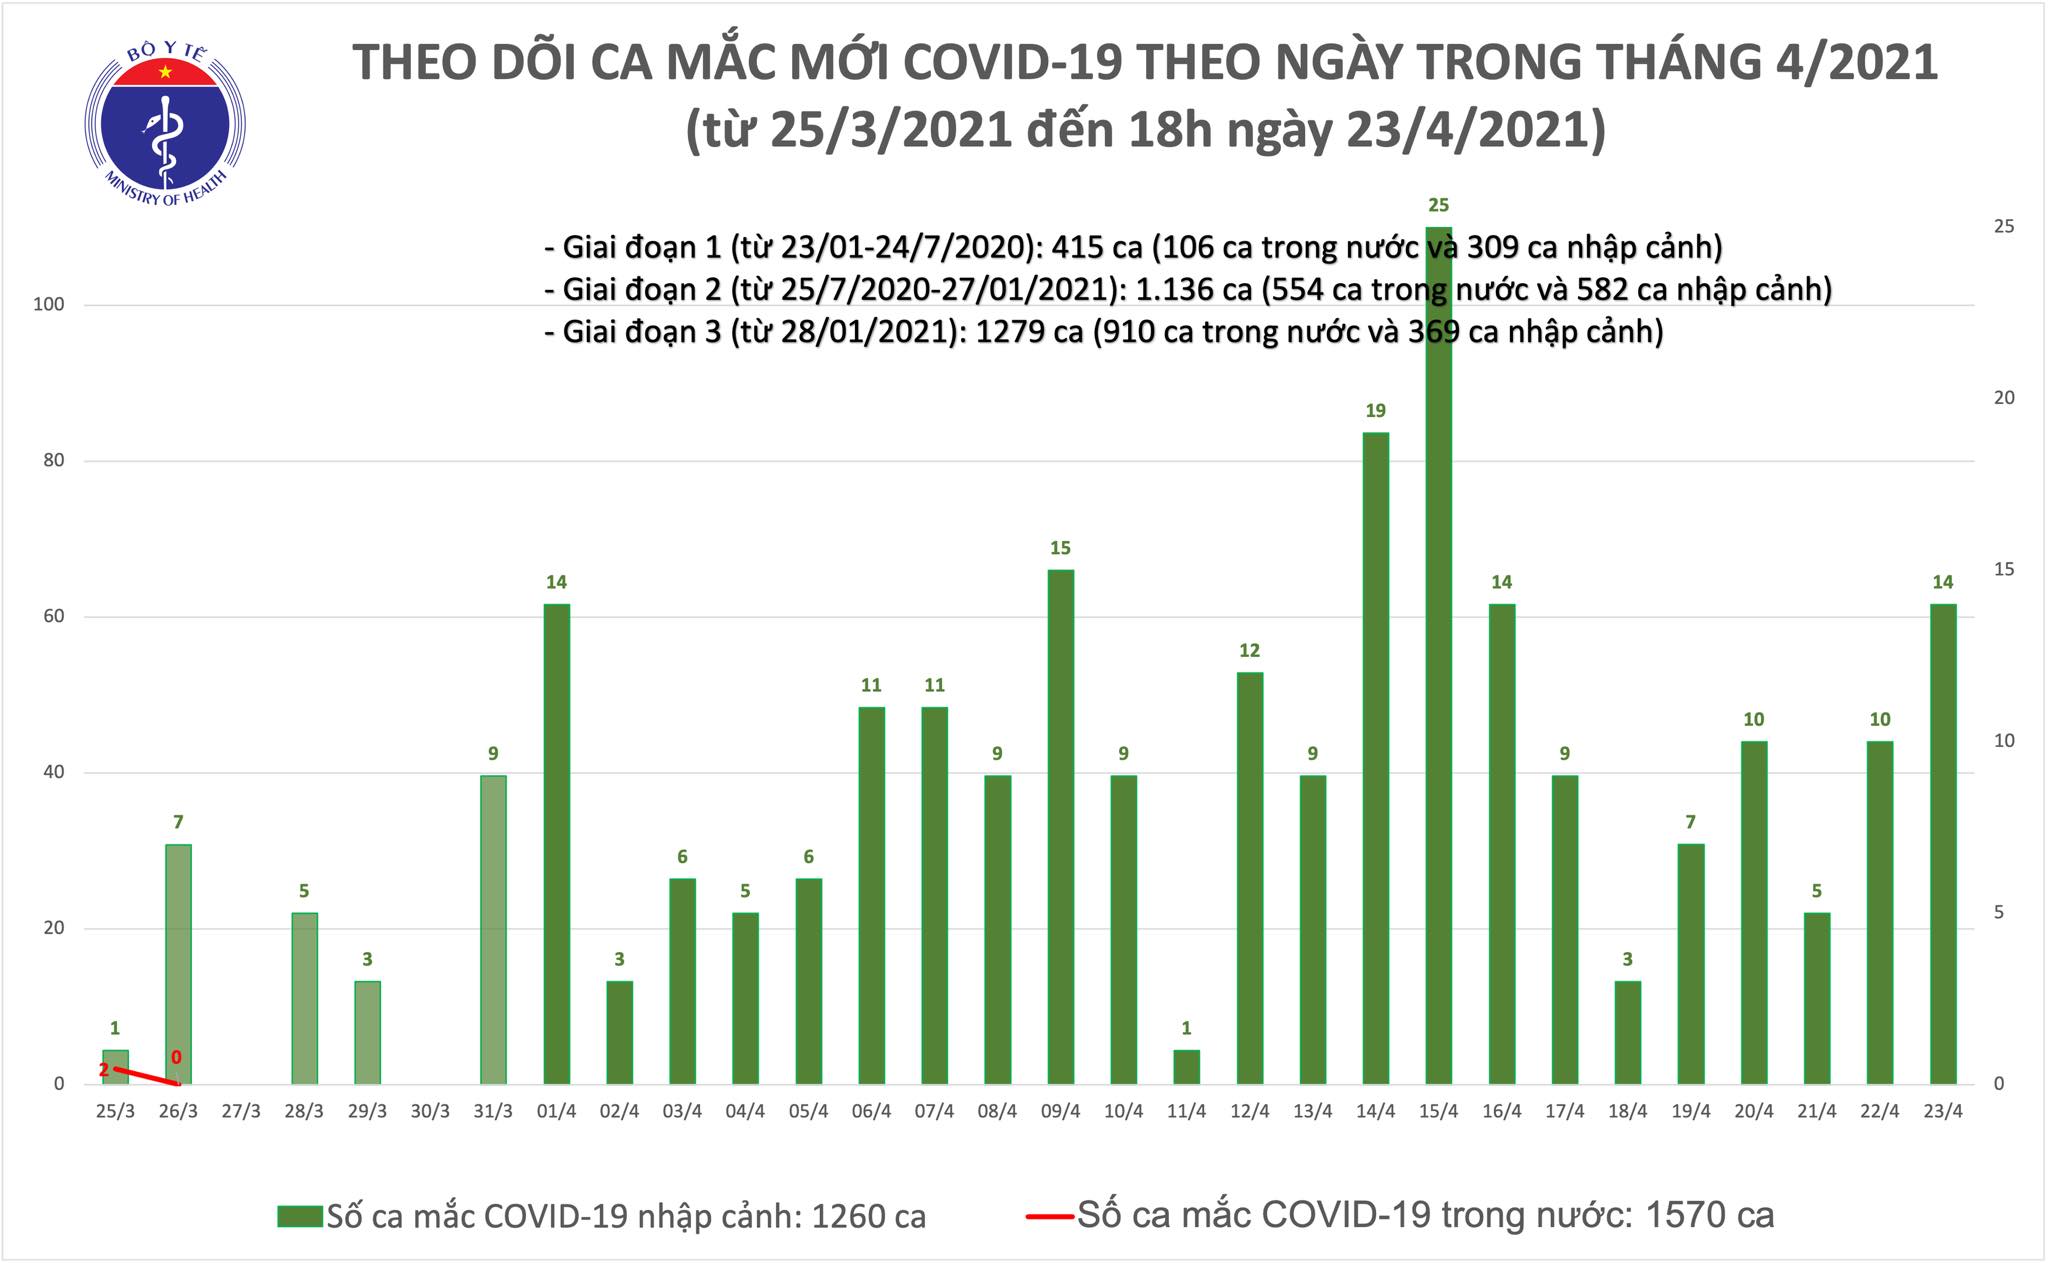 Chiều 23/4: Thêm 6 ca mắc COVID-19 tại An Giang và 4 địa phương khác - Ảnh 1.